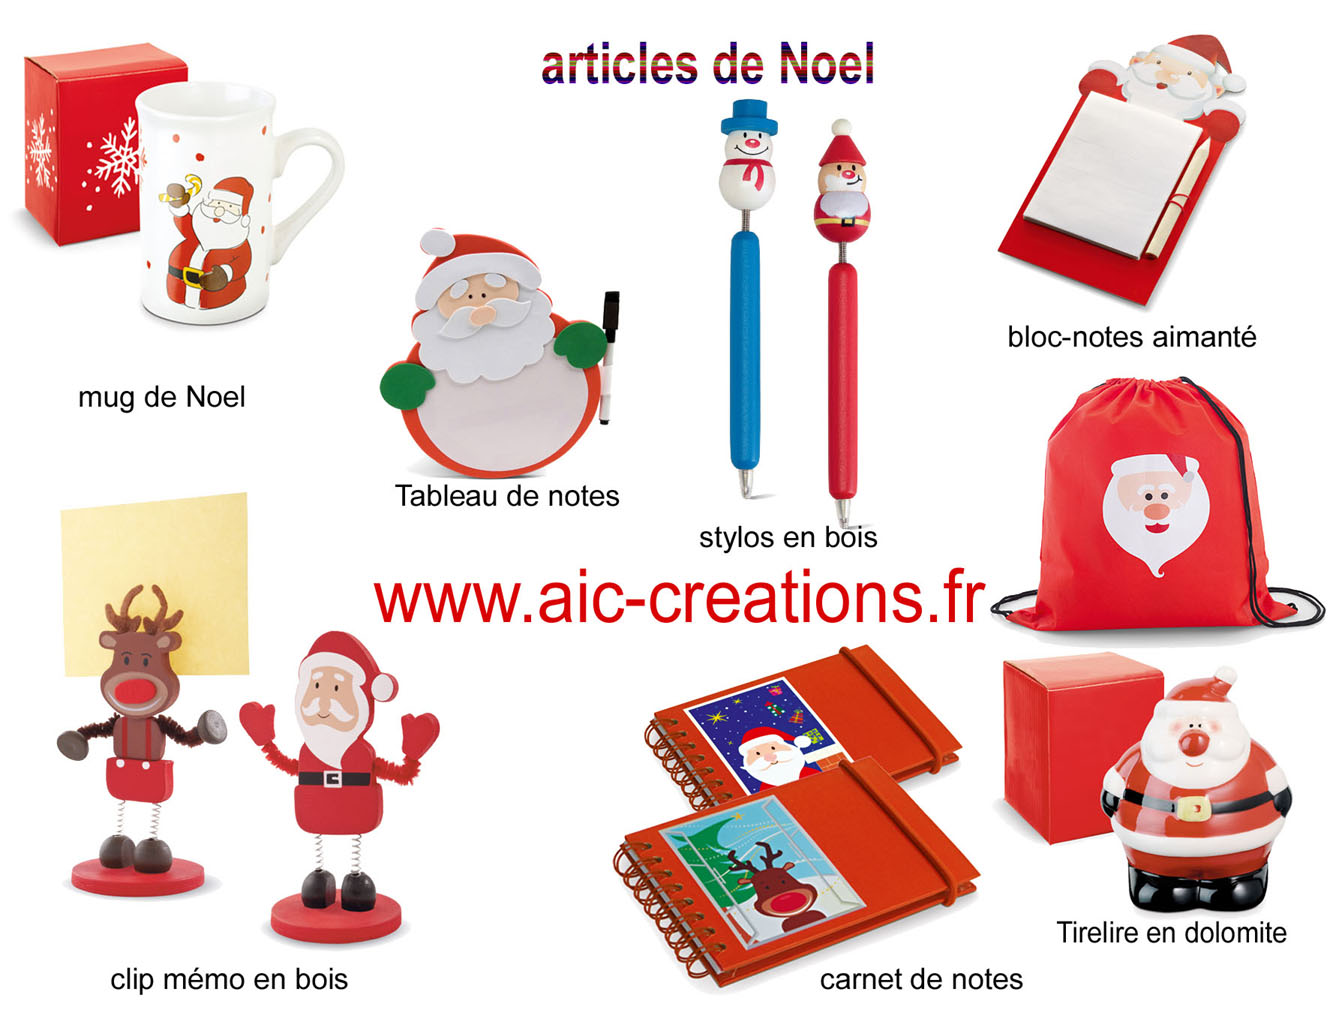 articles de Noel, cadeaux de Noel pour votre publicité, Noel, enfants, jeux ,cadeaux, tirelire, bloc mémo Noel, tasse Noel